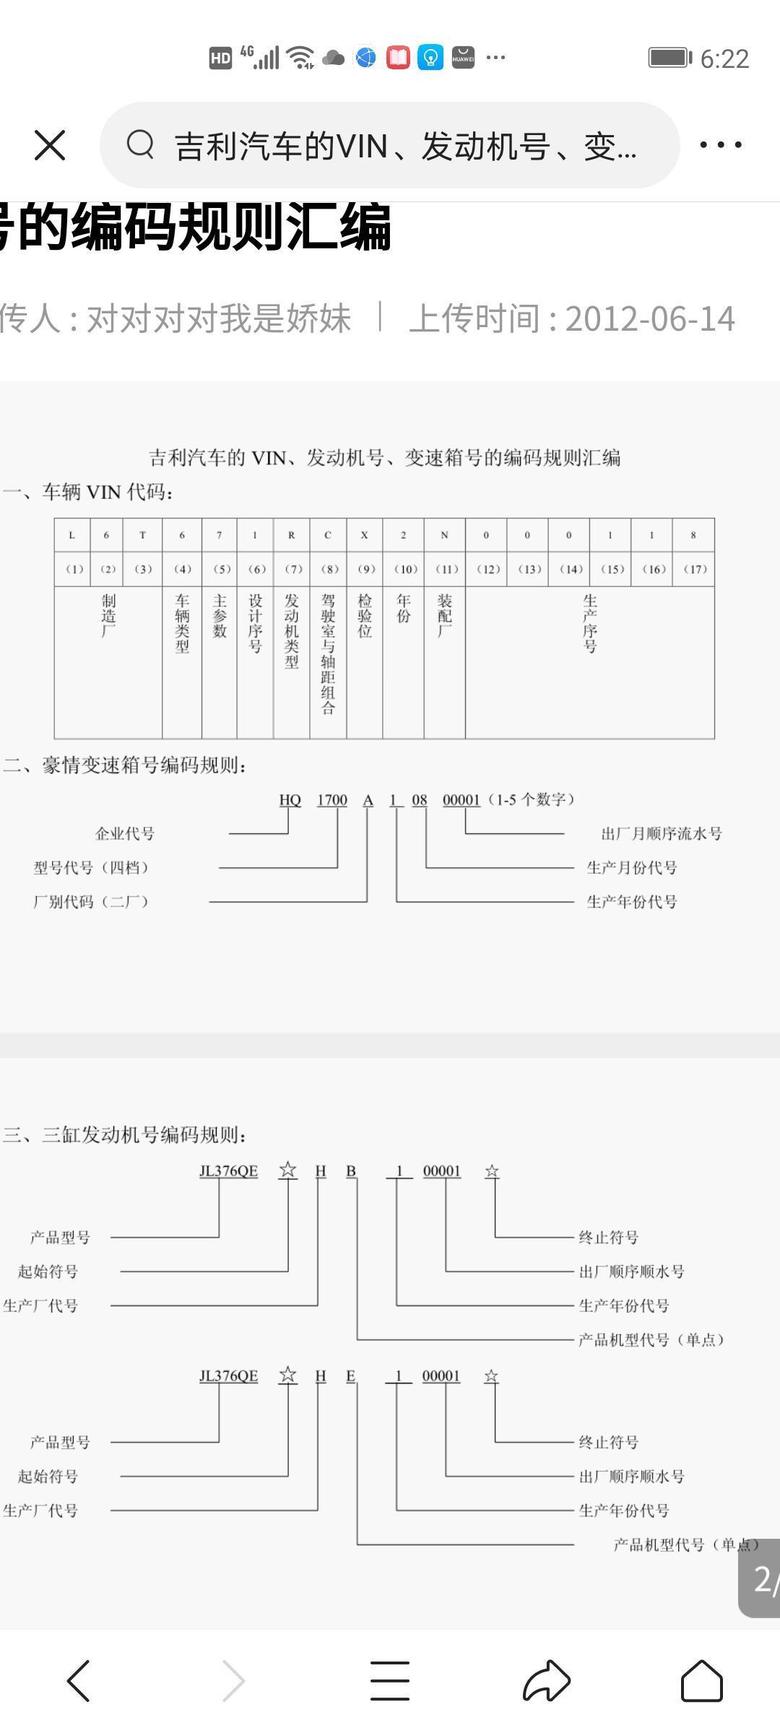 远景车架号上第八位数基本表示变速箱代码，吉利怎么表示的是驾驶室与zhuo距组合？